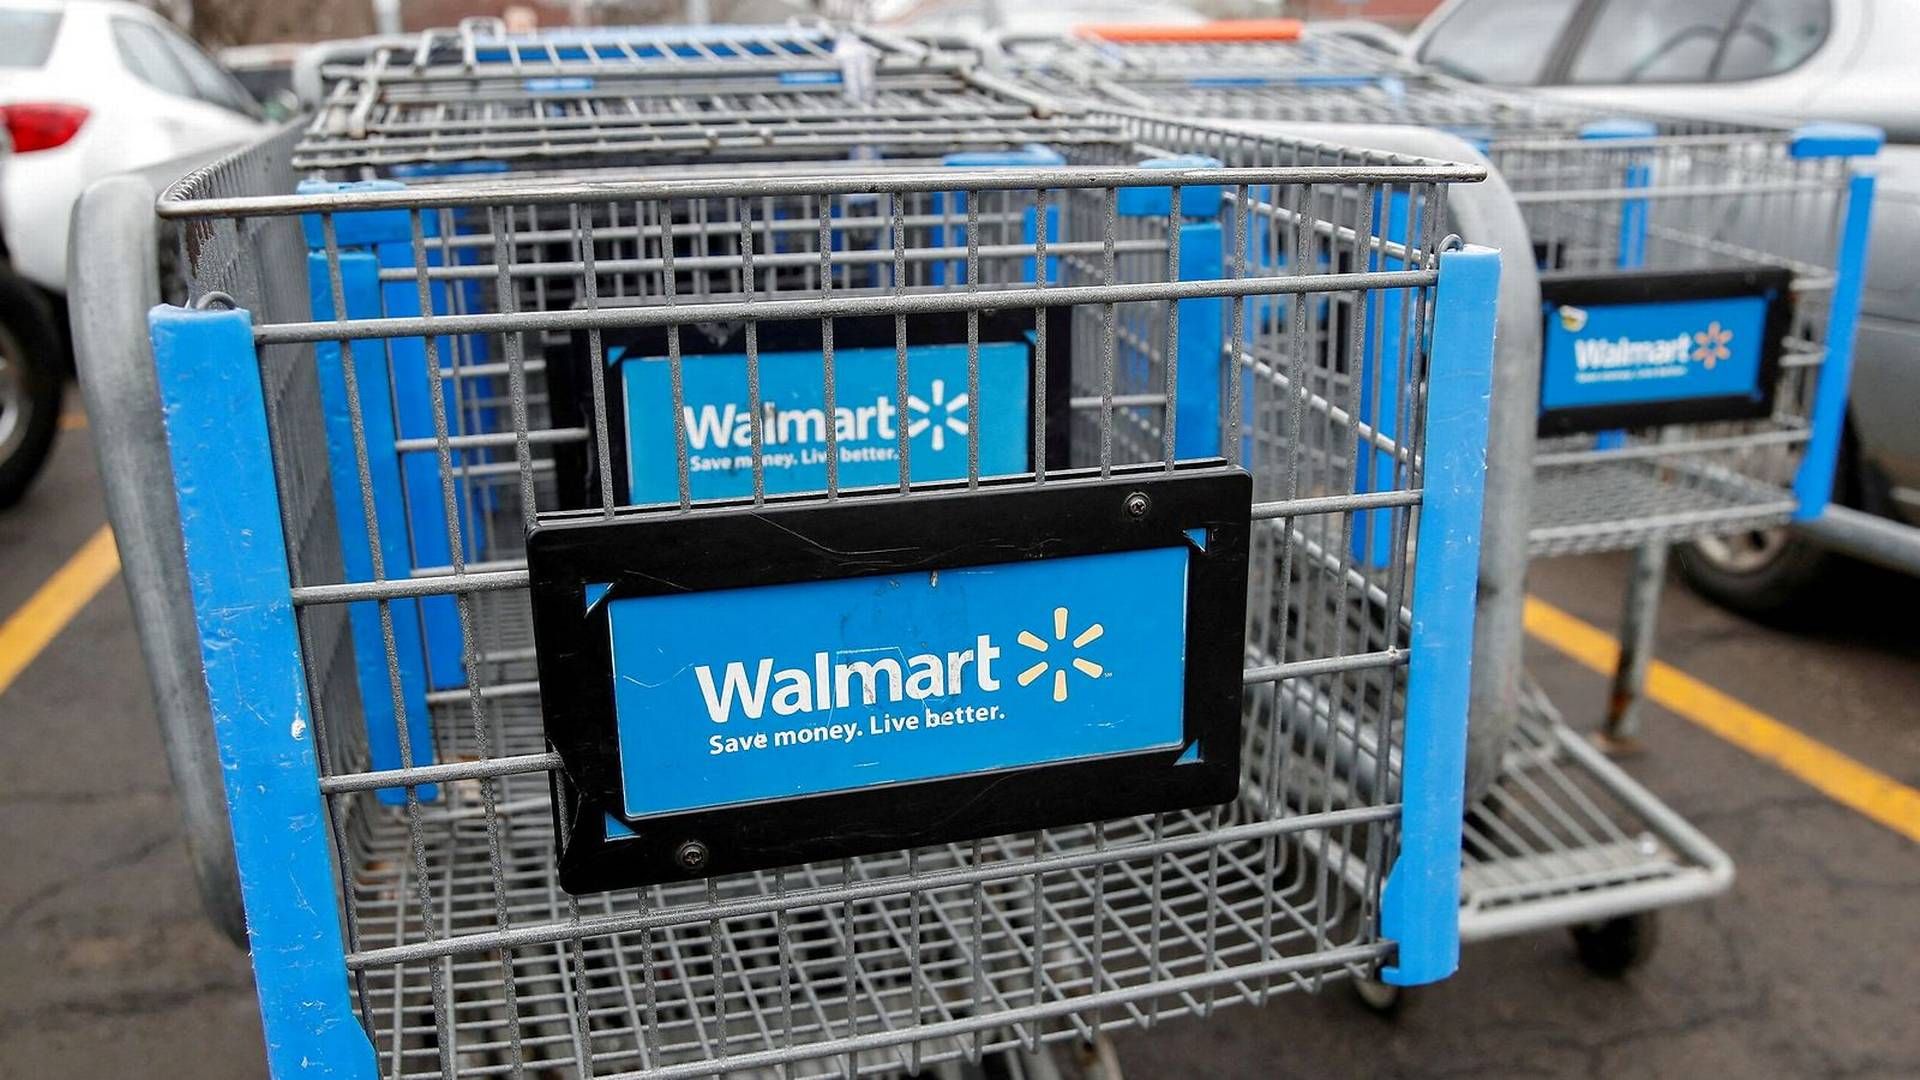 Walmart klarede sig ikke så godt som forventet i første kvartal, skriver Bloomberg News. | Foto: Kamil Krzaczynski/Reuters/Ritzau Scanpix